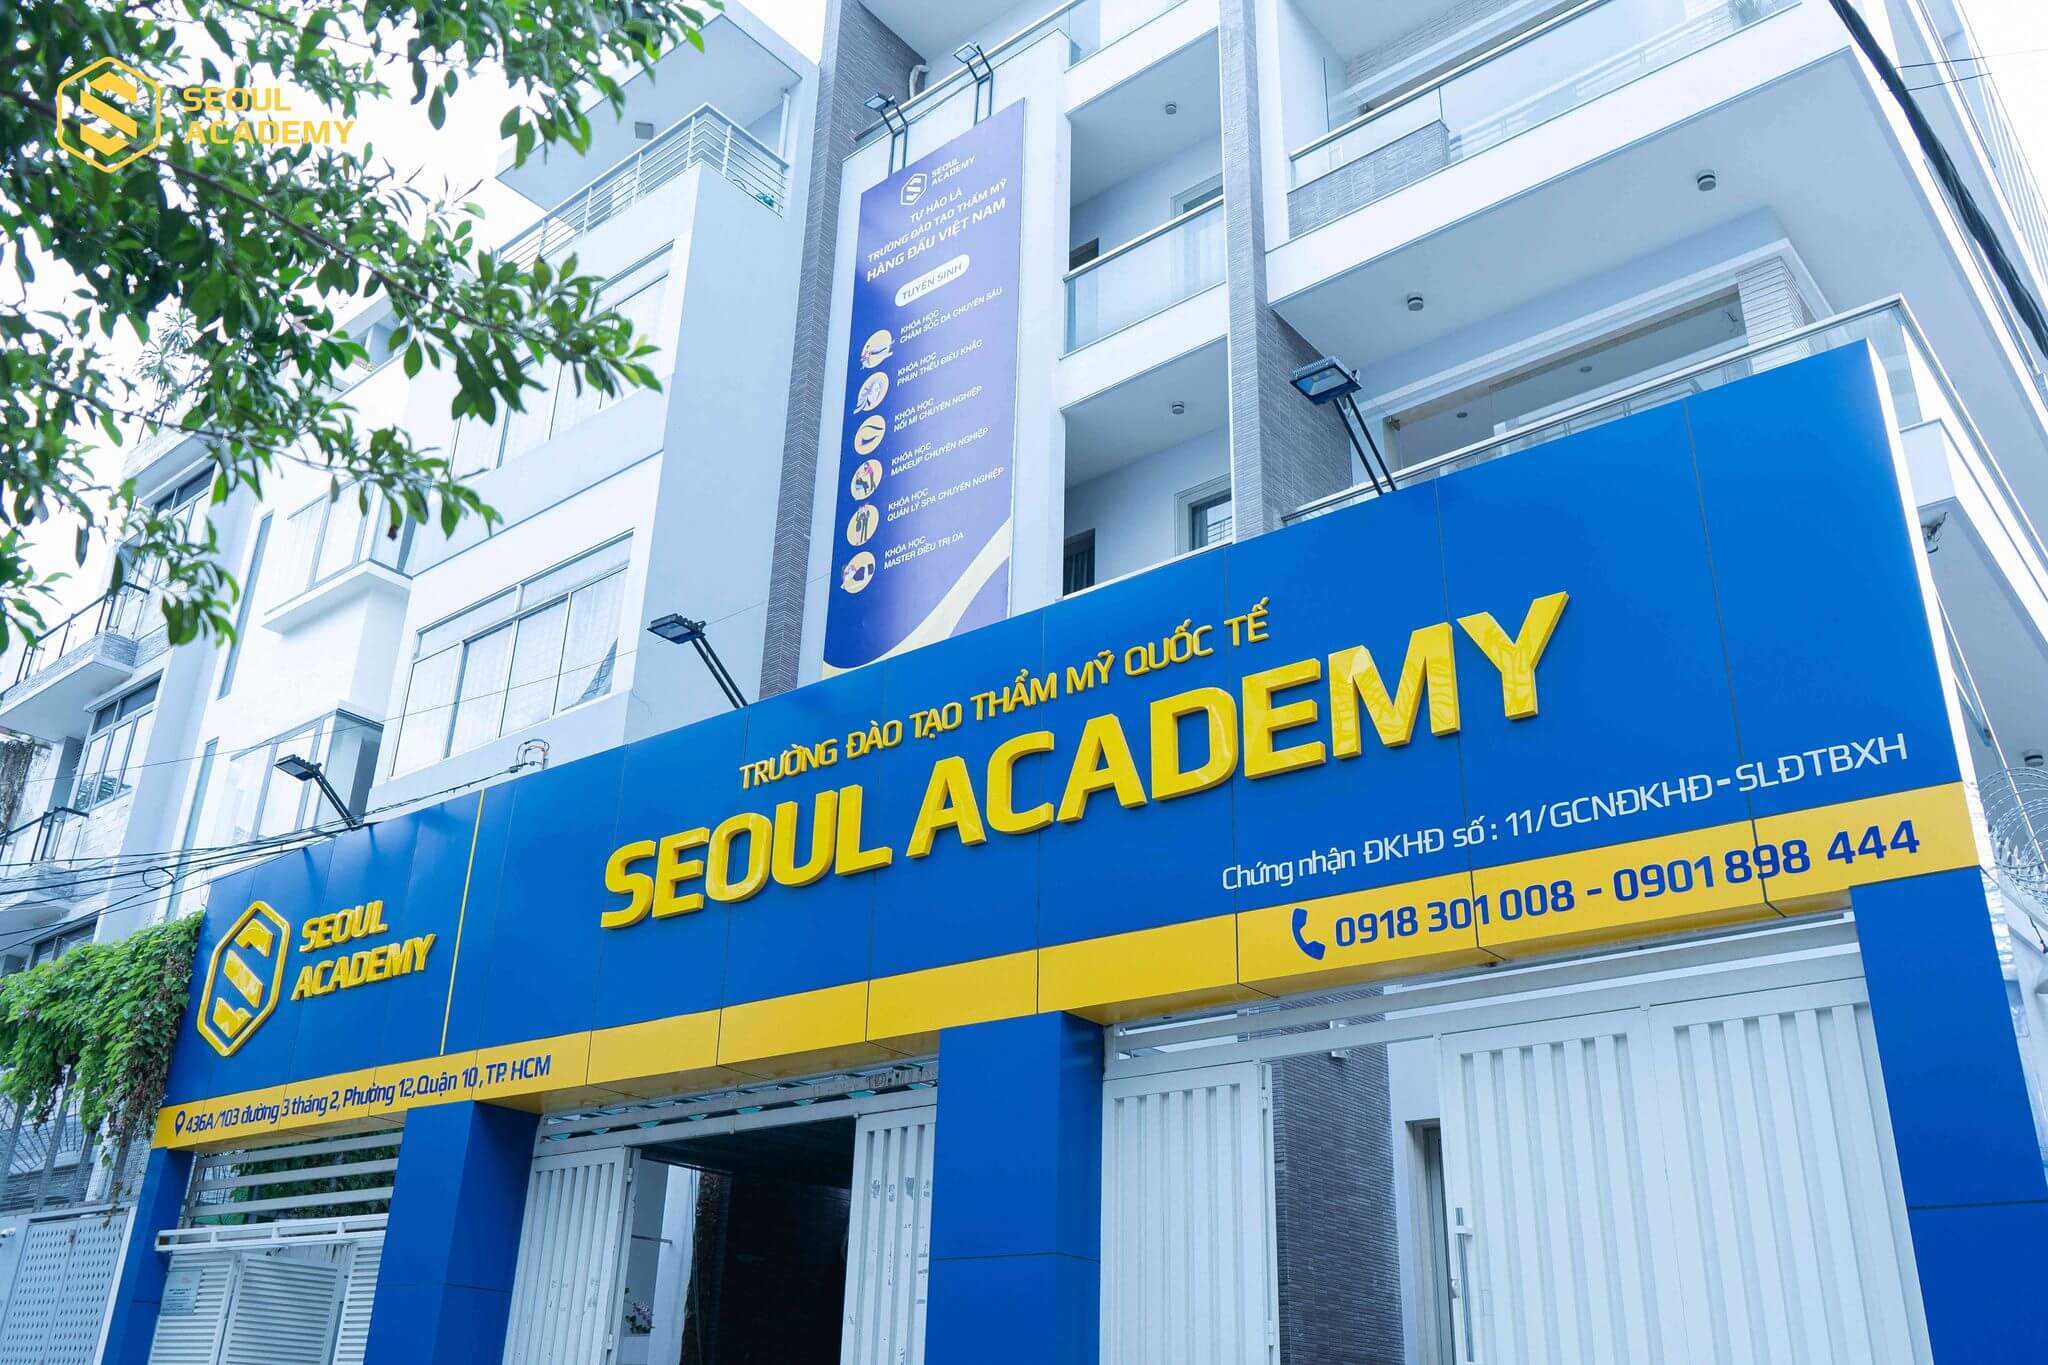 Trường đào tạo thẩm mỹ quốc tế Seoul Academy.